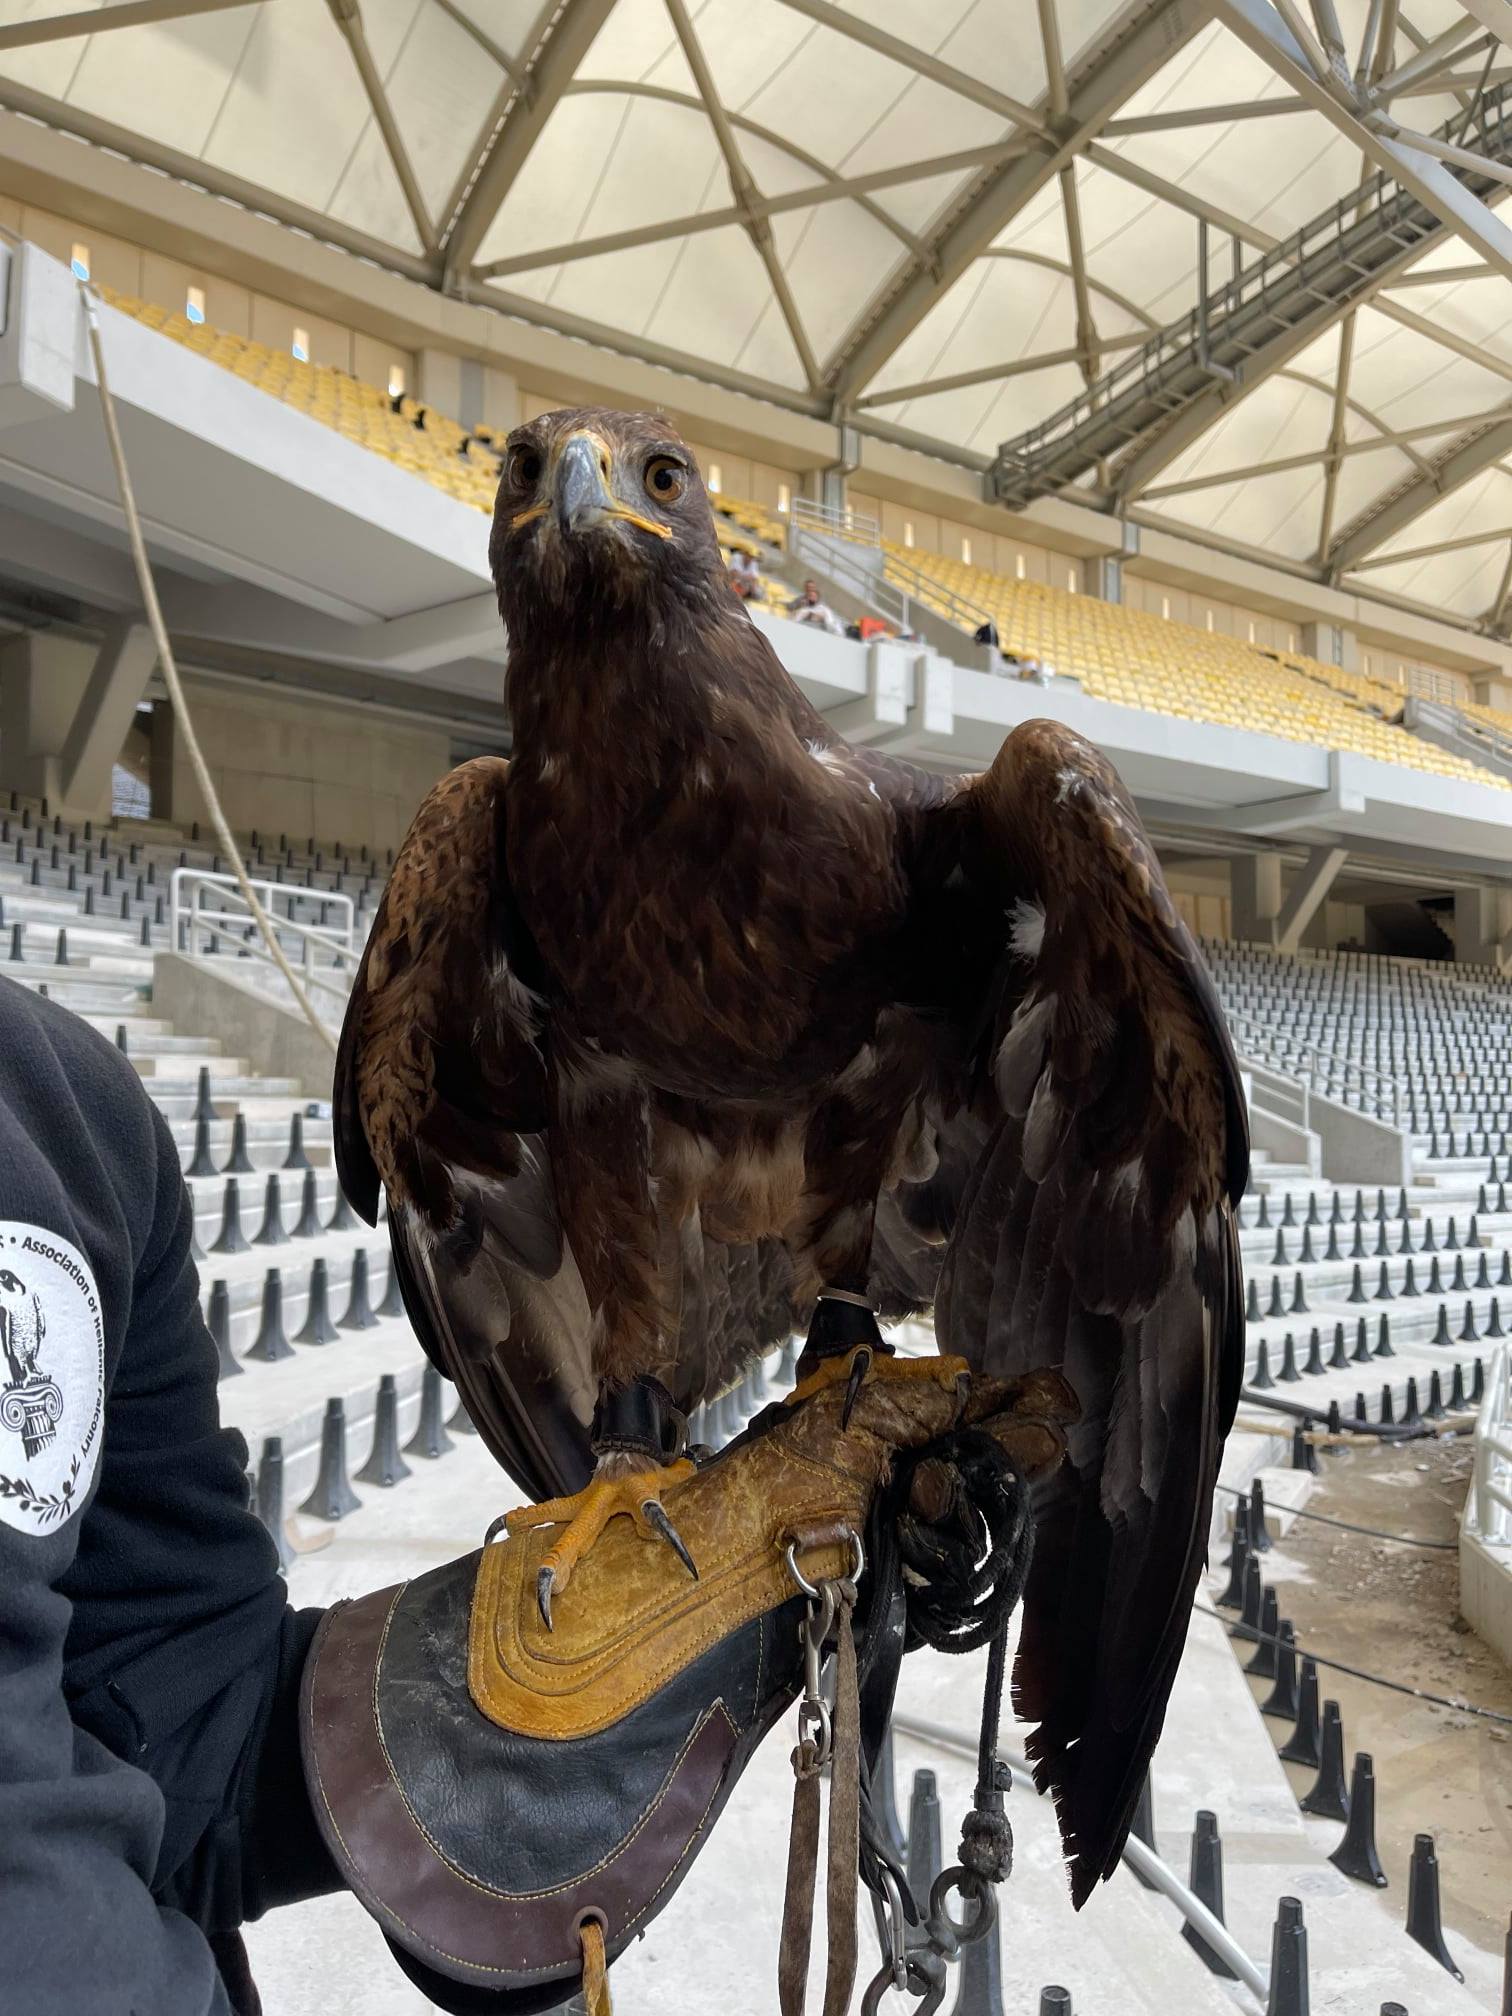 AEK:Αυτός είναι ο αετός που εκπαιδεύεται για την πρώτη του πτήση στη Νέα Φιλαδέλφεια, στα πρότυπα της Μπενφίκας.